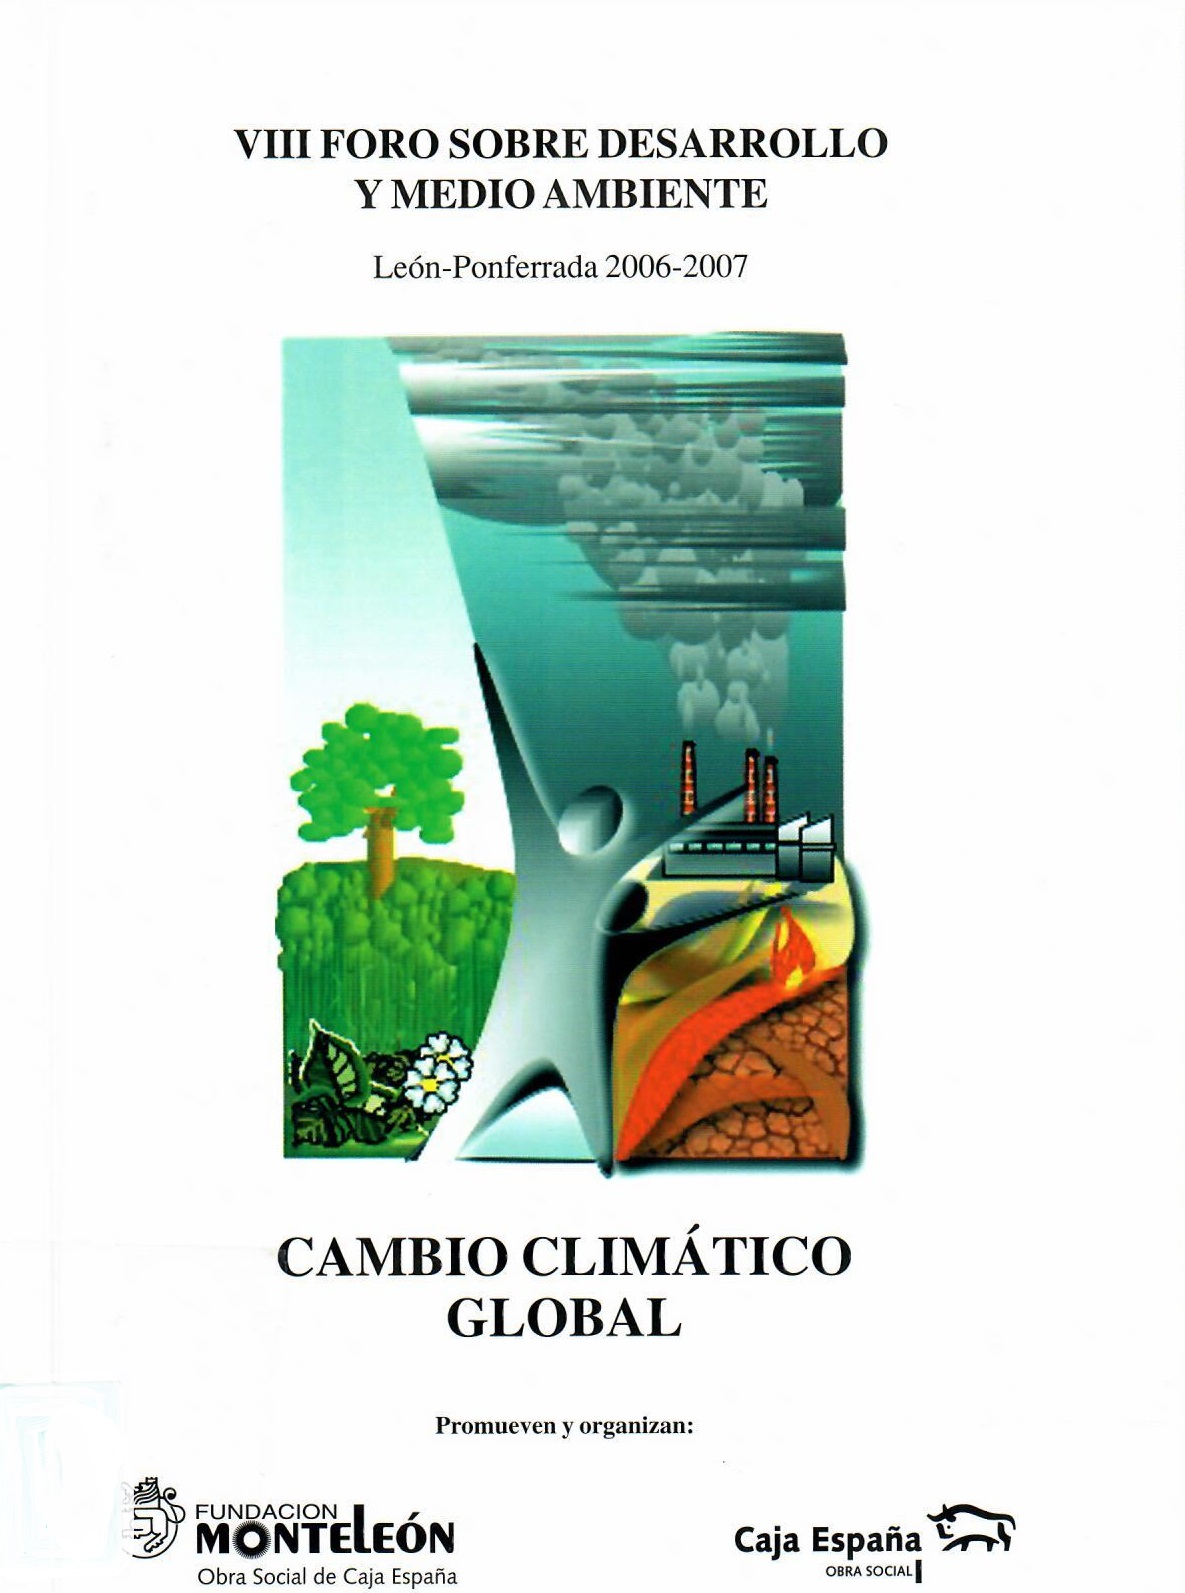 Imagen de portada del libro Cambio climático global